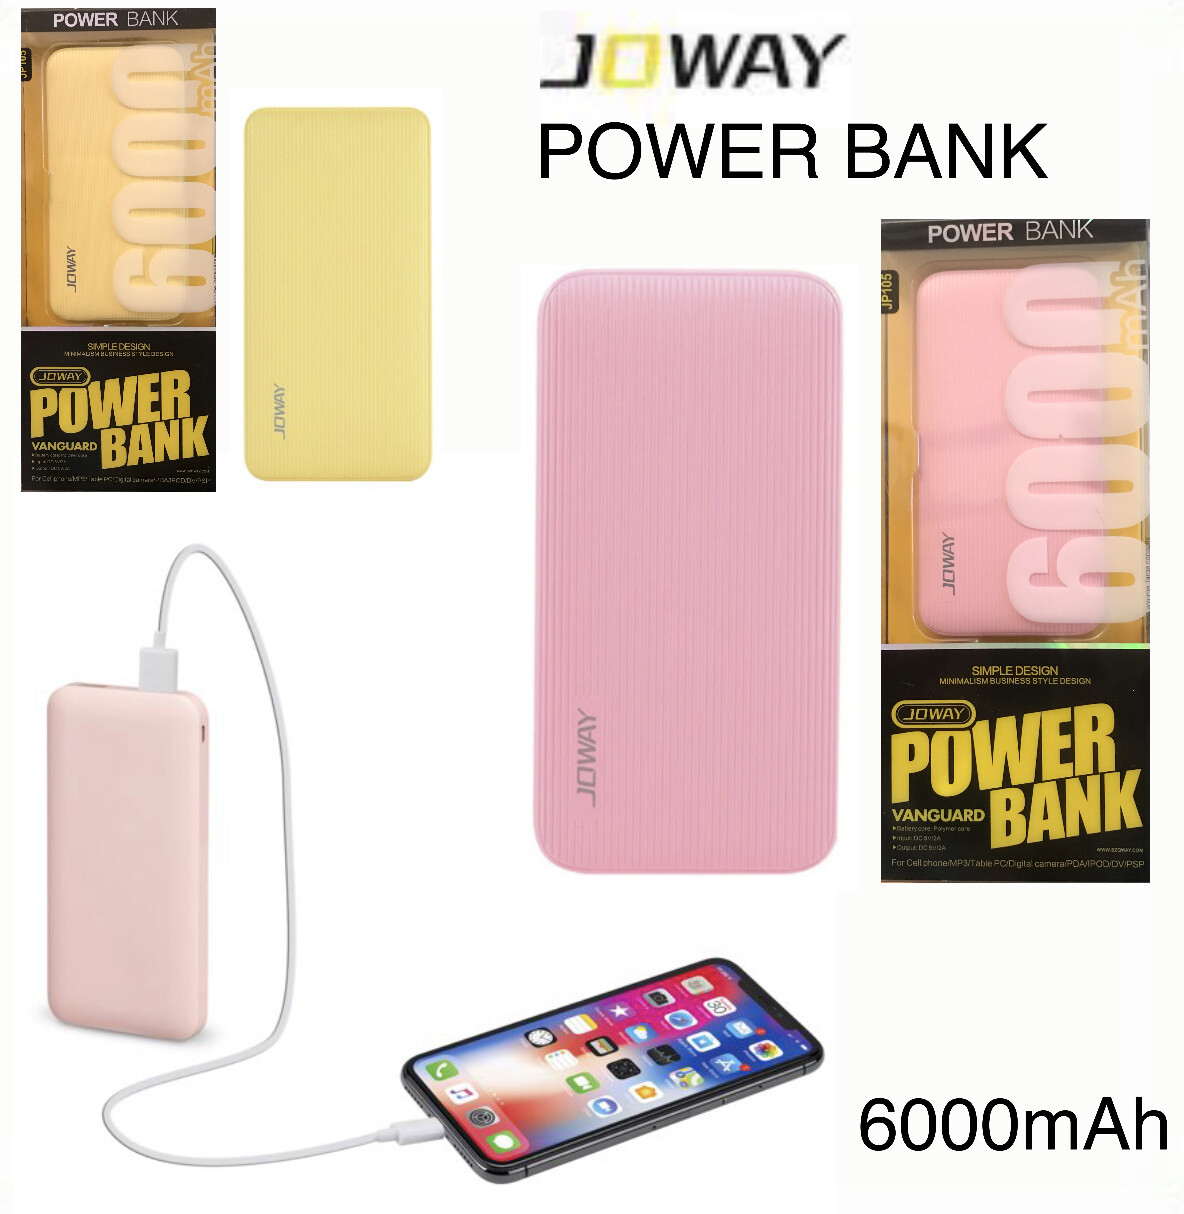 Power Bank 6000mAh